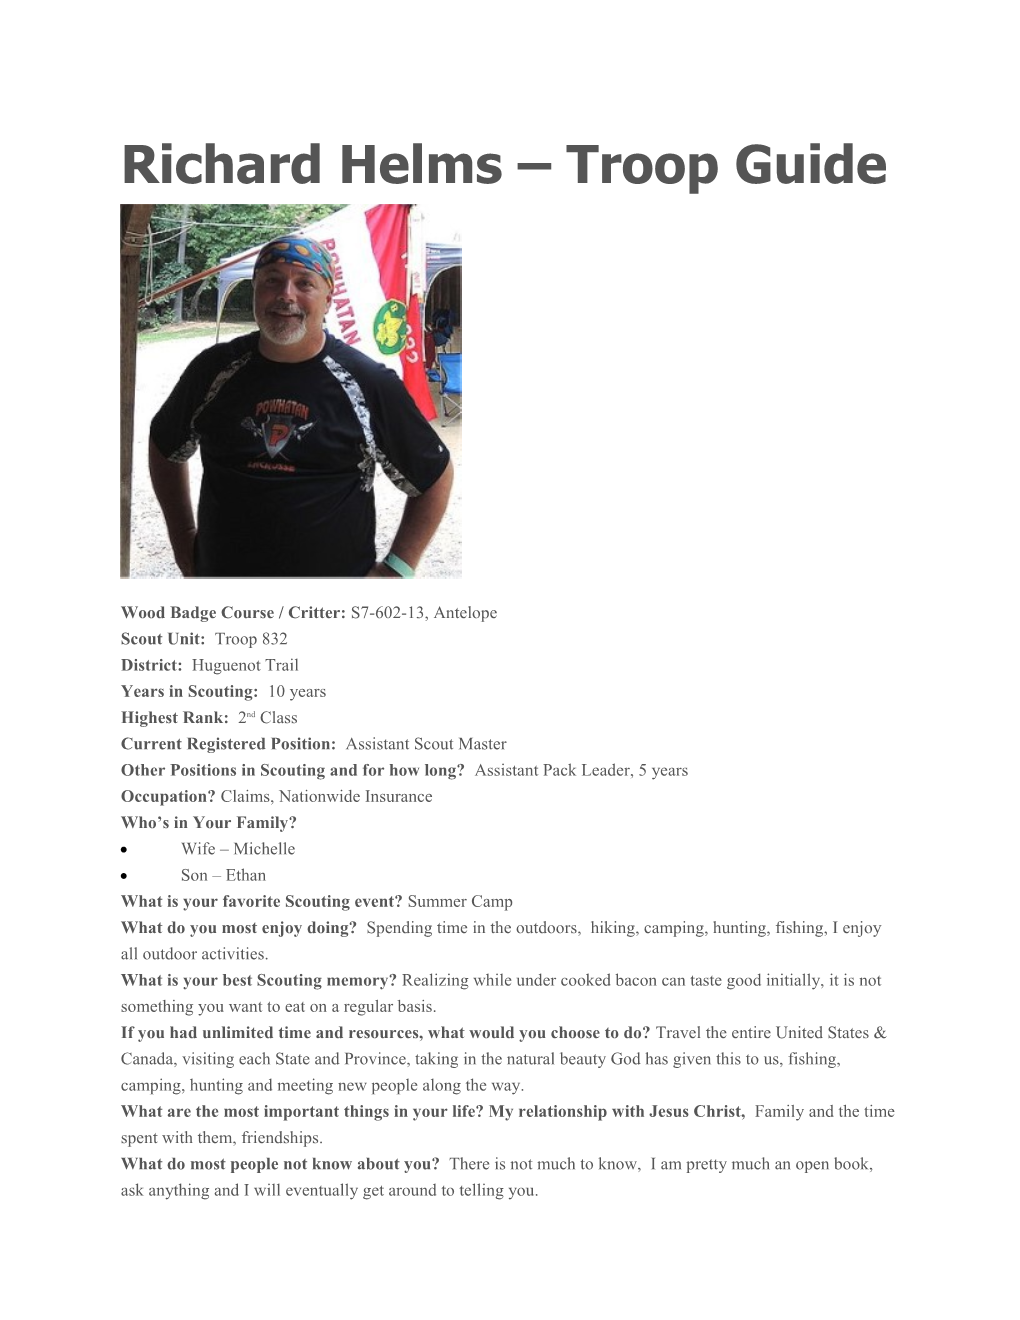 Richard Helms Troop Guide